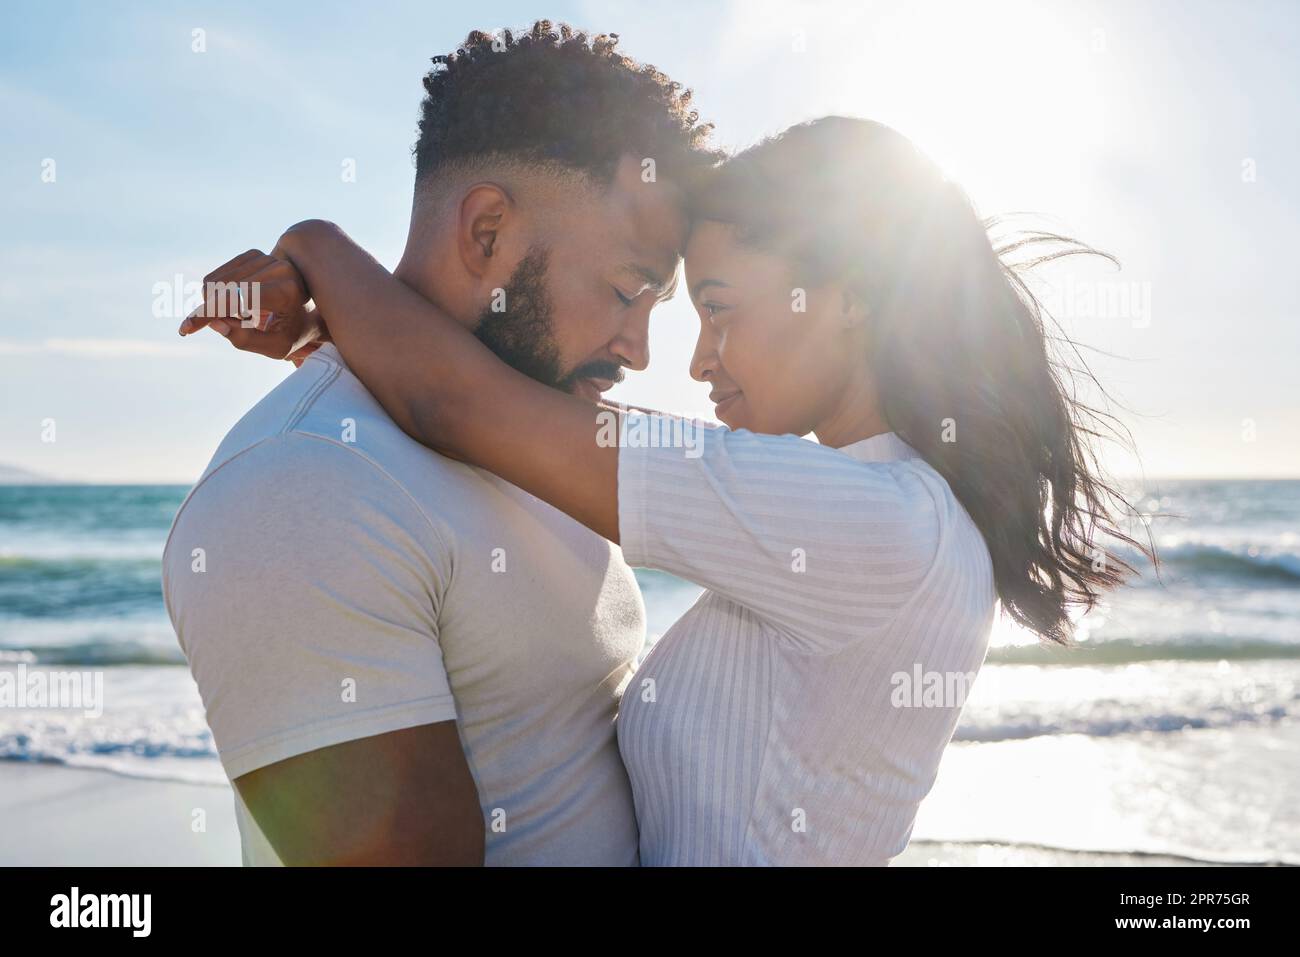 Junge Liebe. Eine kurze Aufnahme eines liebevollen jungen Paares, das einen intimen Moment am Strand teilt. Stockfoto